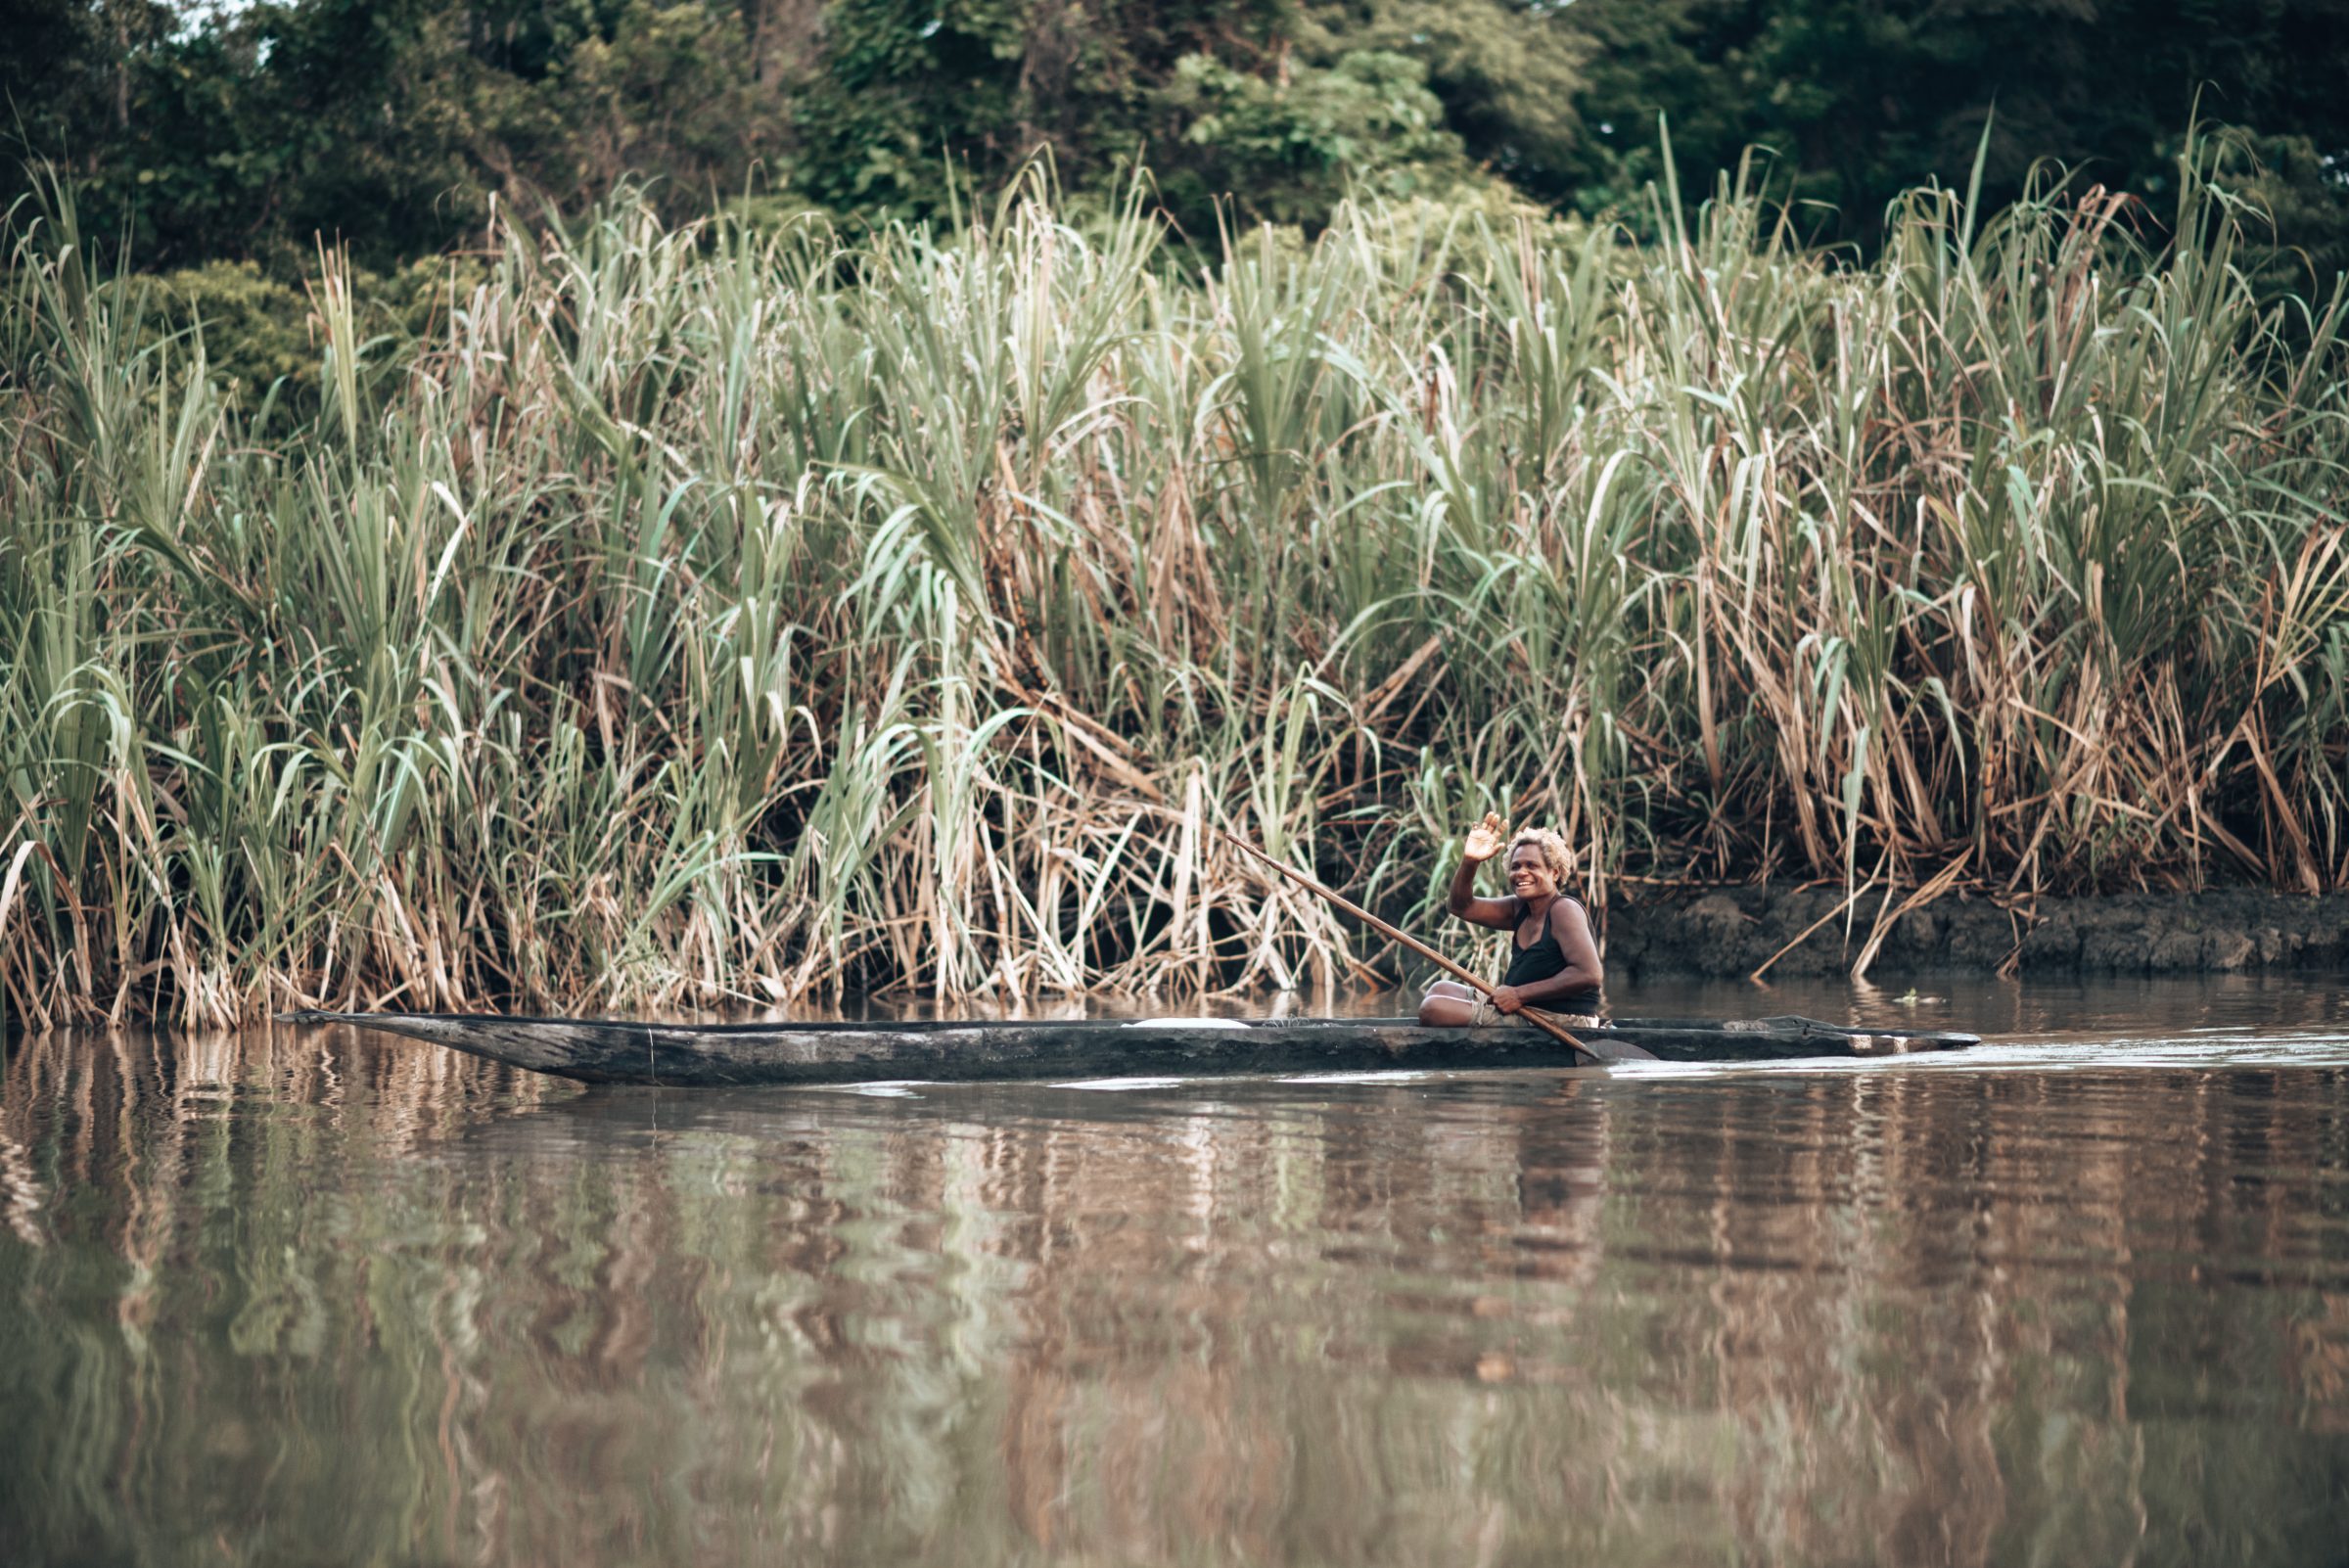 Vrouw in kano op weg om te vissen.